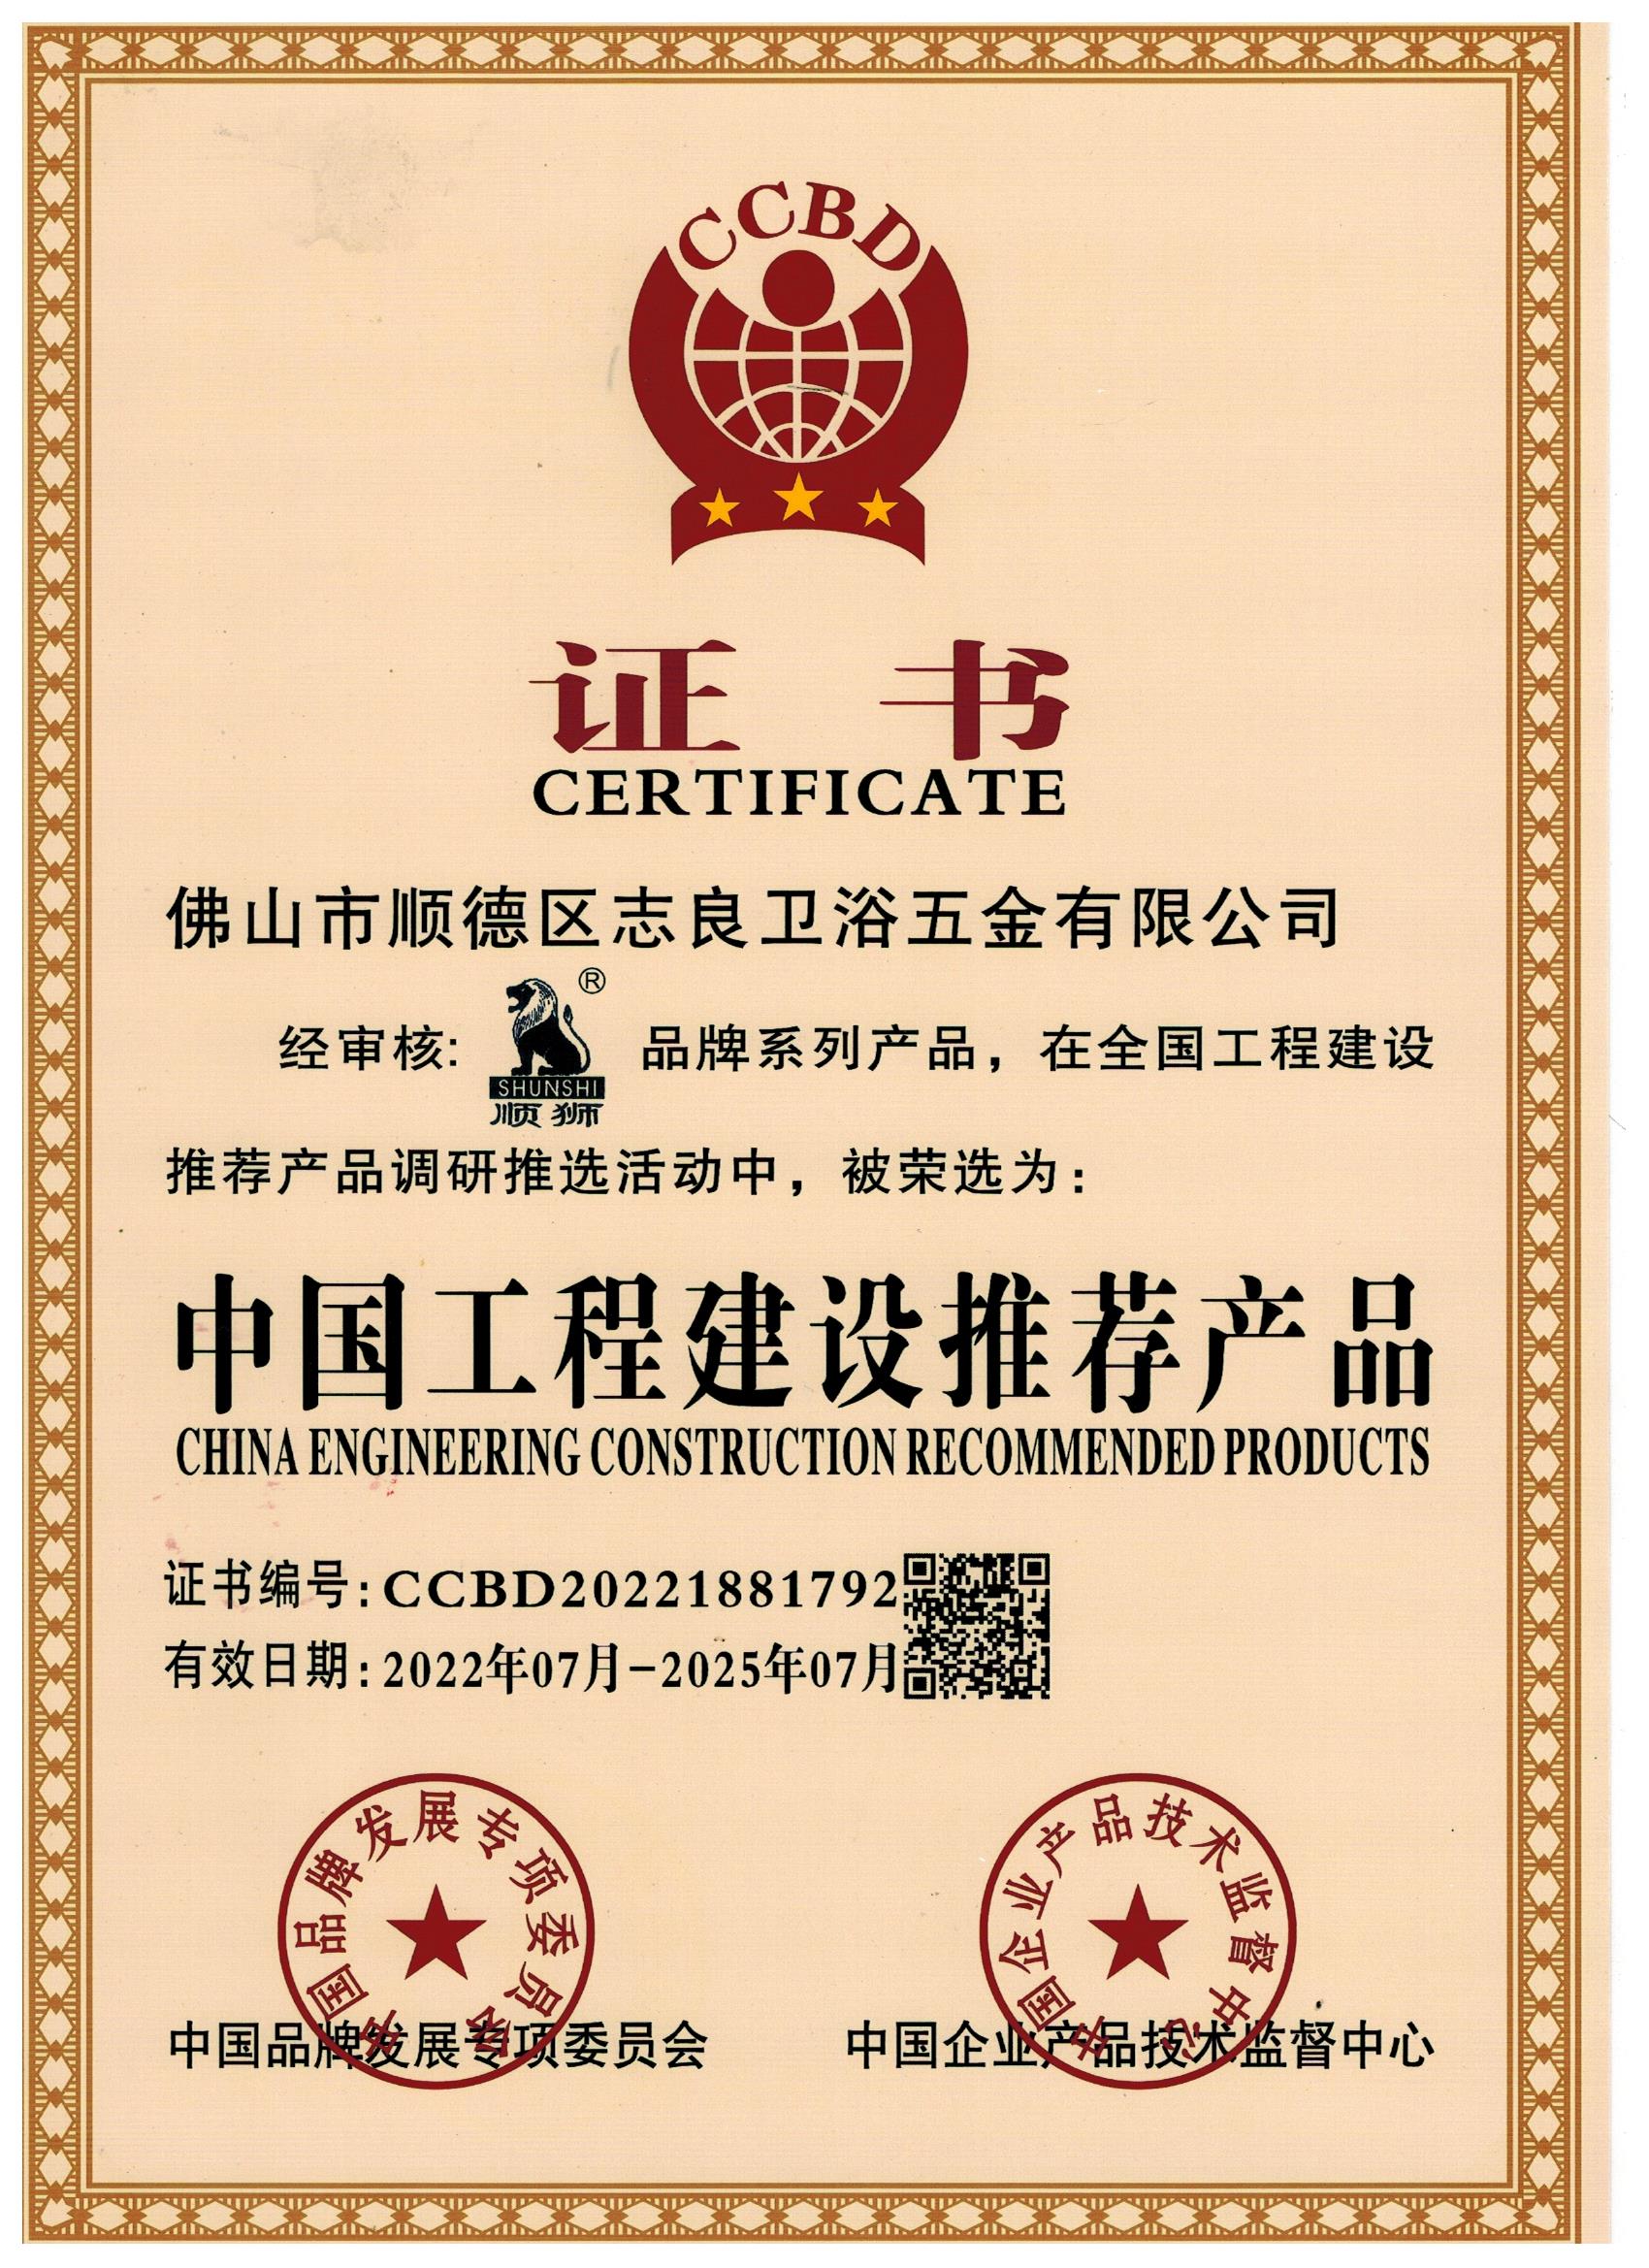 中国工程建设推荐产品证书（顺狮）22-25年.jpg